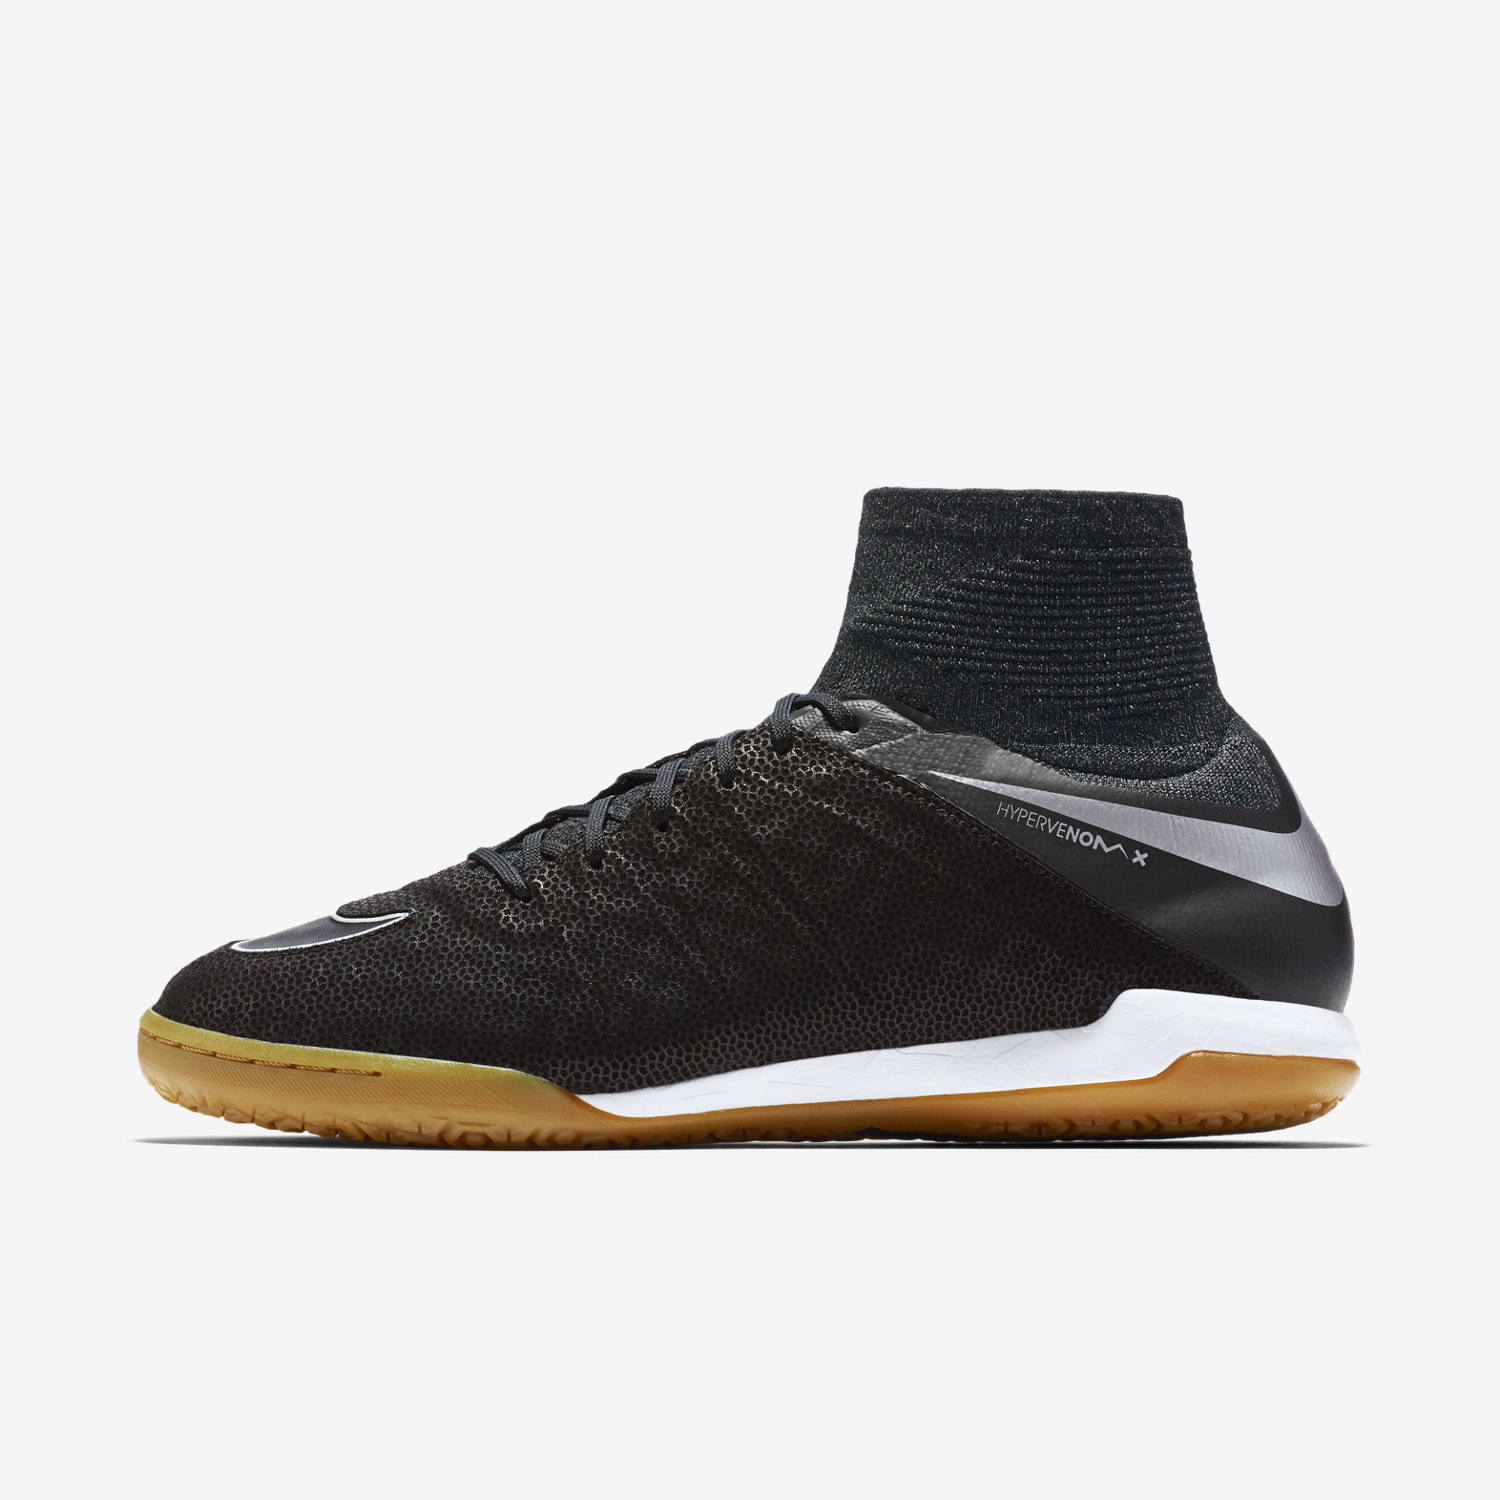 ποδοσφαιρικα παπουτσια ανδρικα Nike HyperVenomX Proximo Tech Craft 2.0 IC μαυρα/μεταλλικός ασημι/βαθ